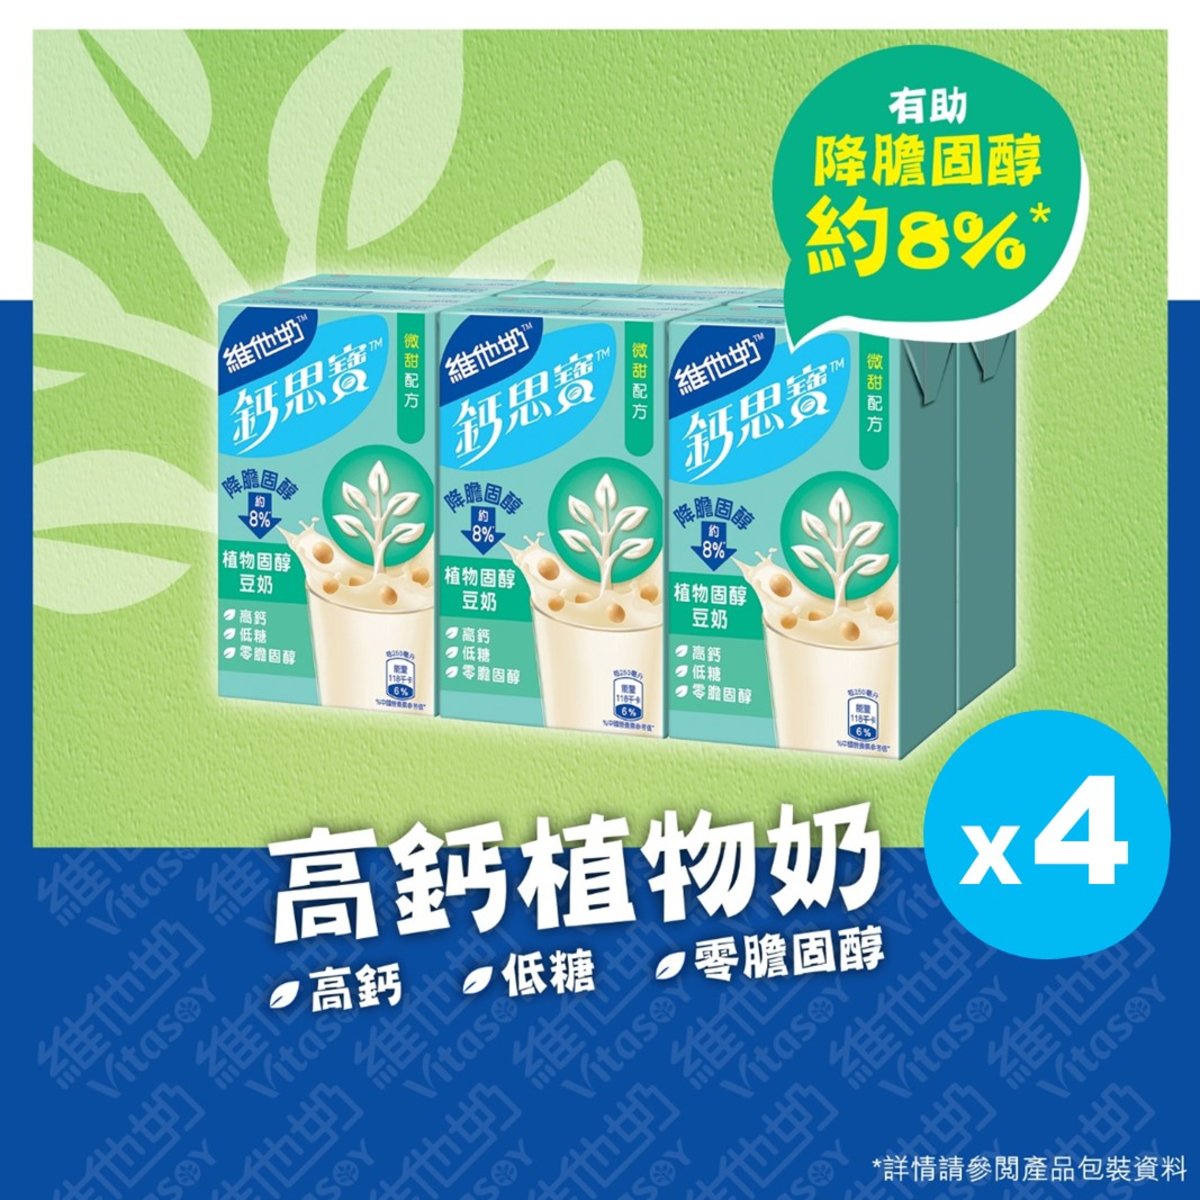 鈣思寶高鈣植物固醇豆奶 250毫升6包裝 x 4排 重量級